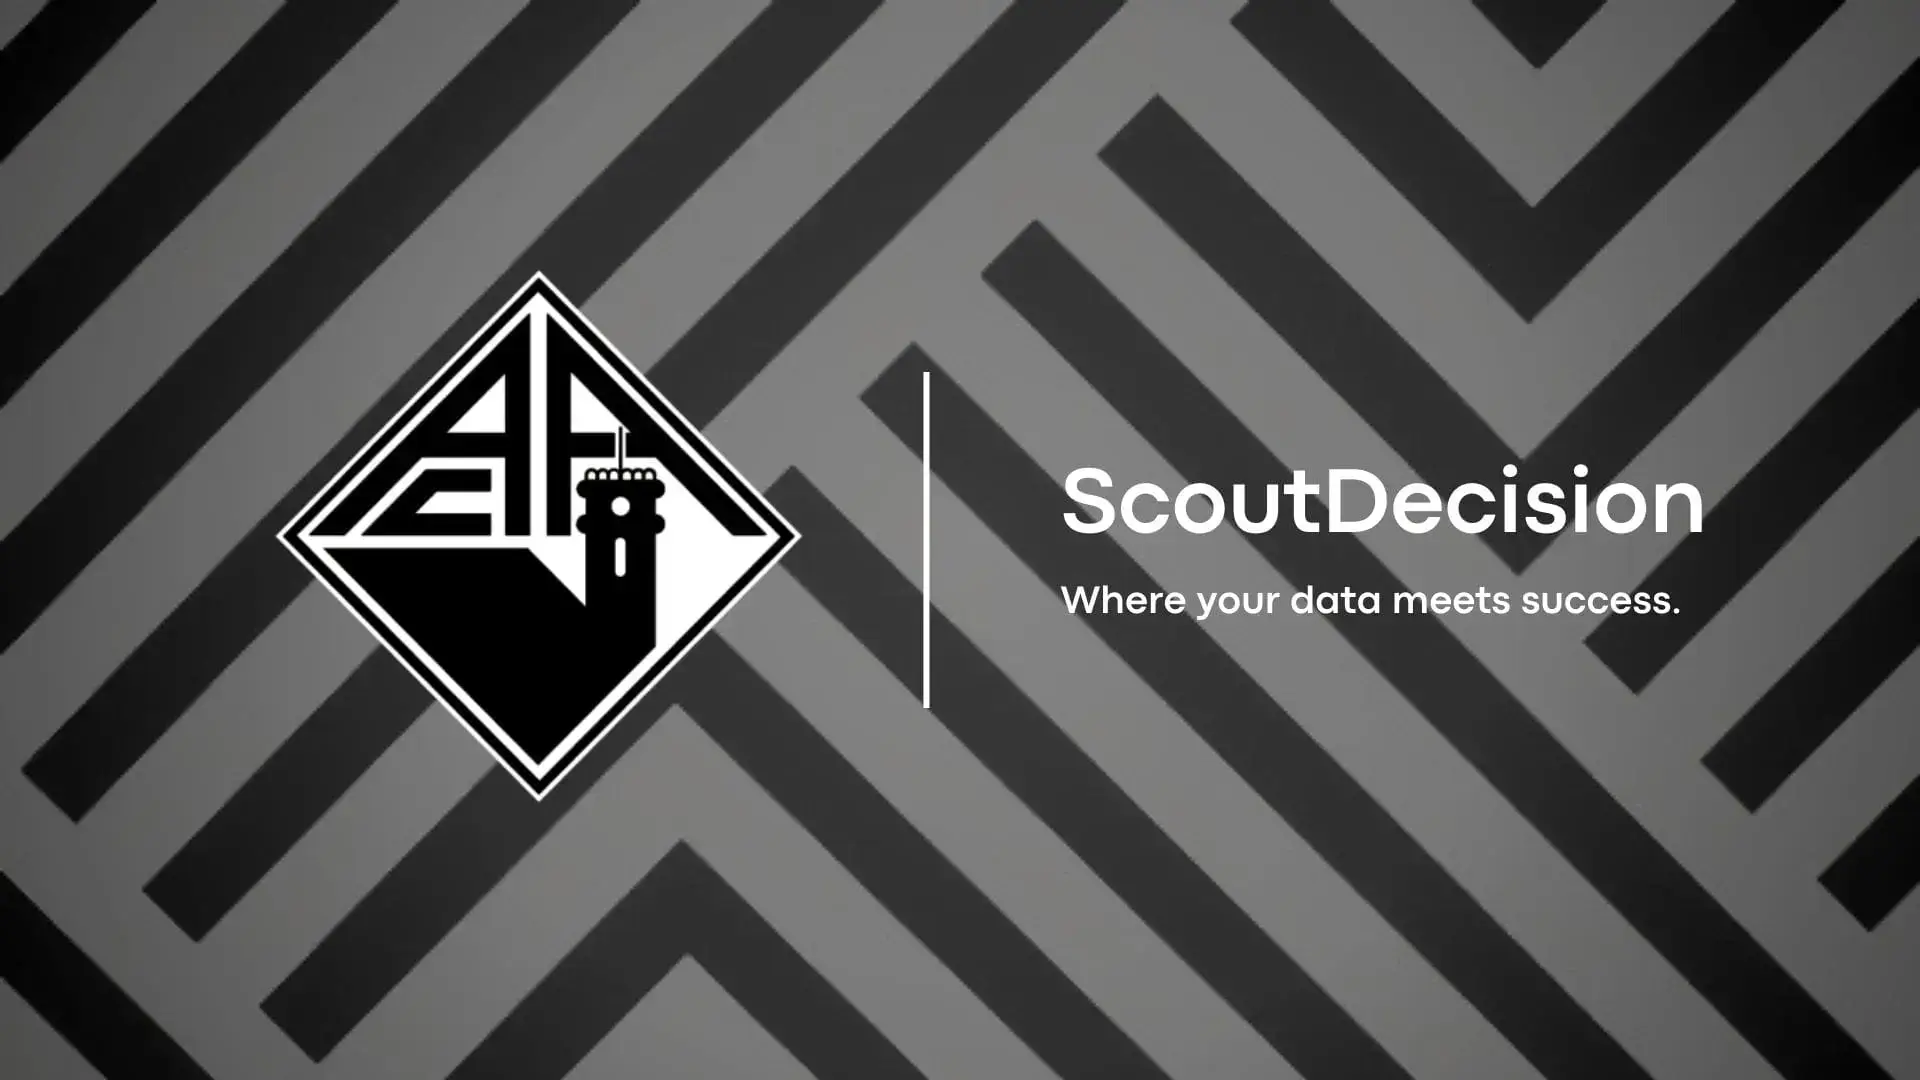 ScoutDecision associa-se a Clube Histórico Português